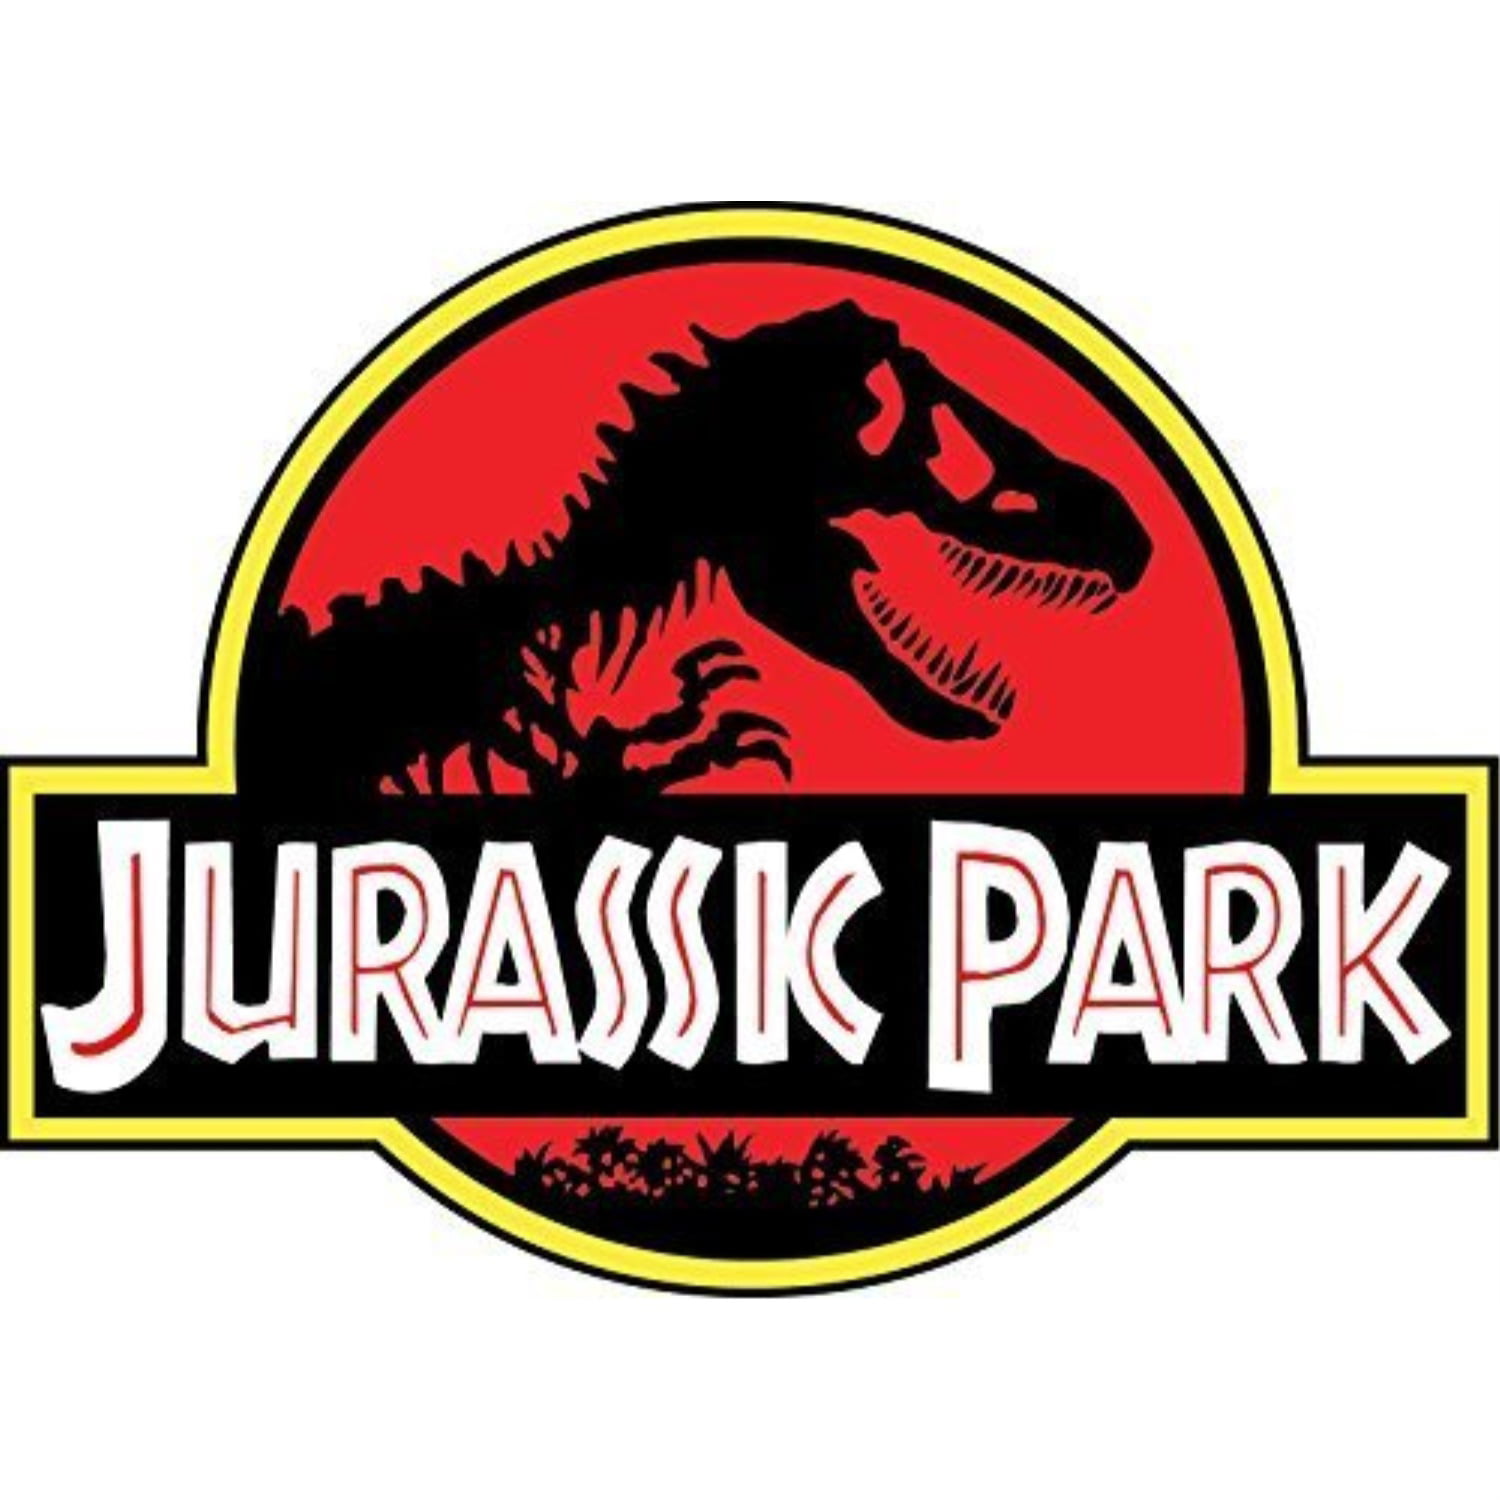 jurassic park 4"x5" sticker decal vinyl jeep safari dinosaur - Walmart